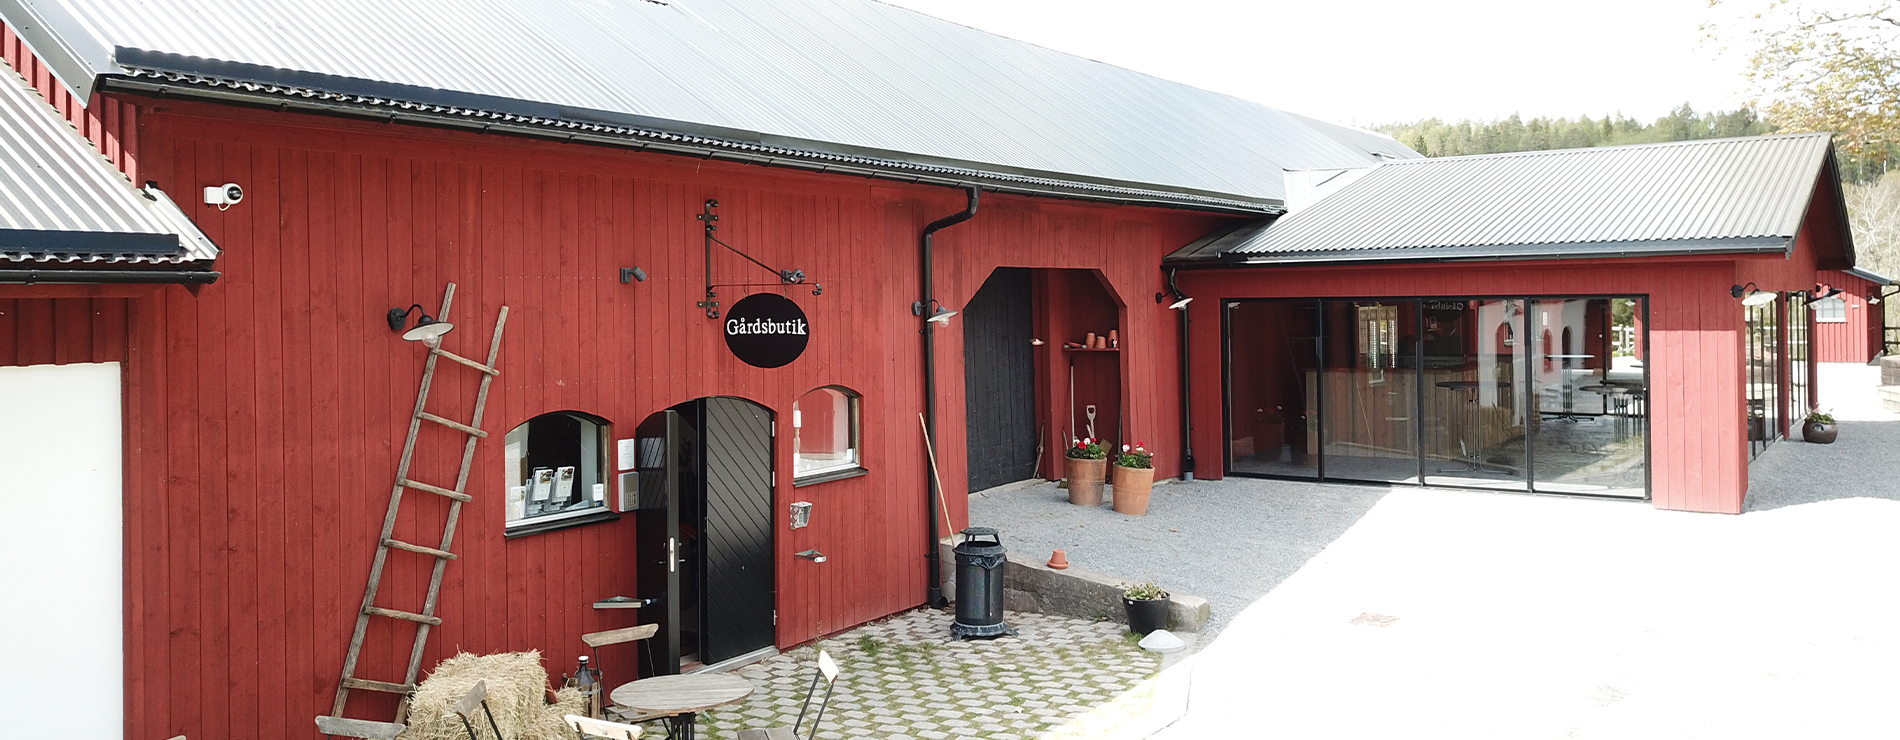 Ulkeröds Gårdsbutik i Munkedal - Bohuslän - Västsverige